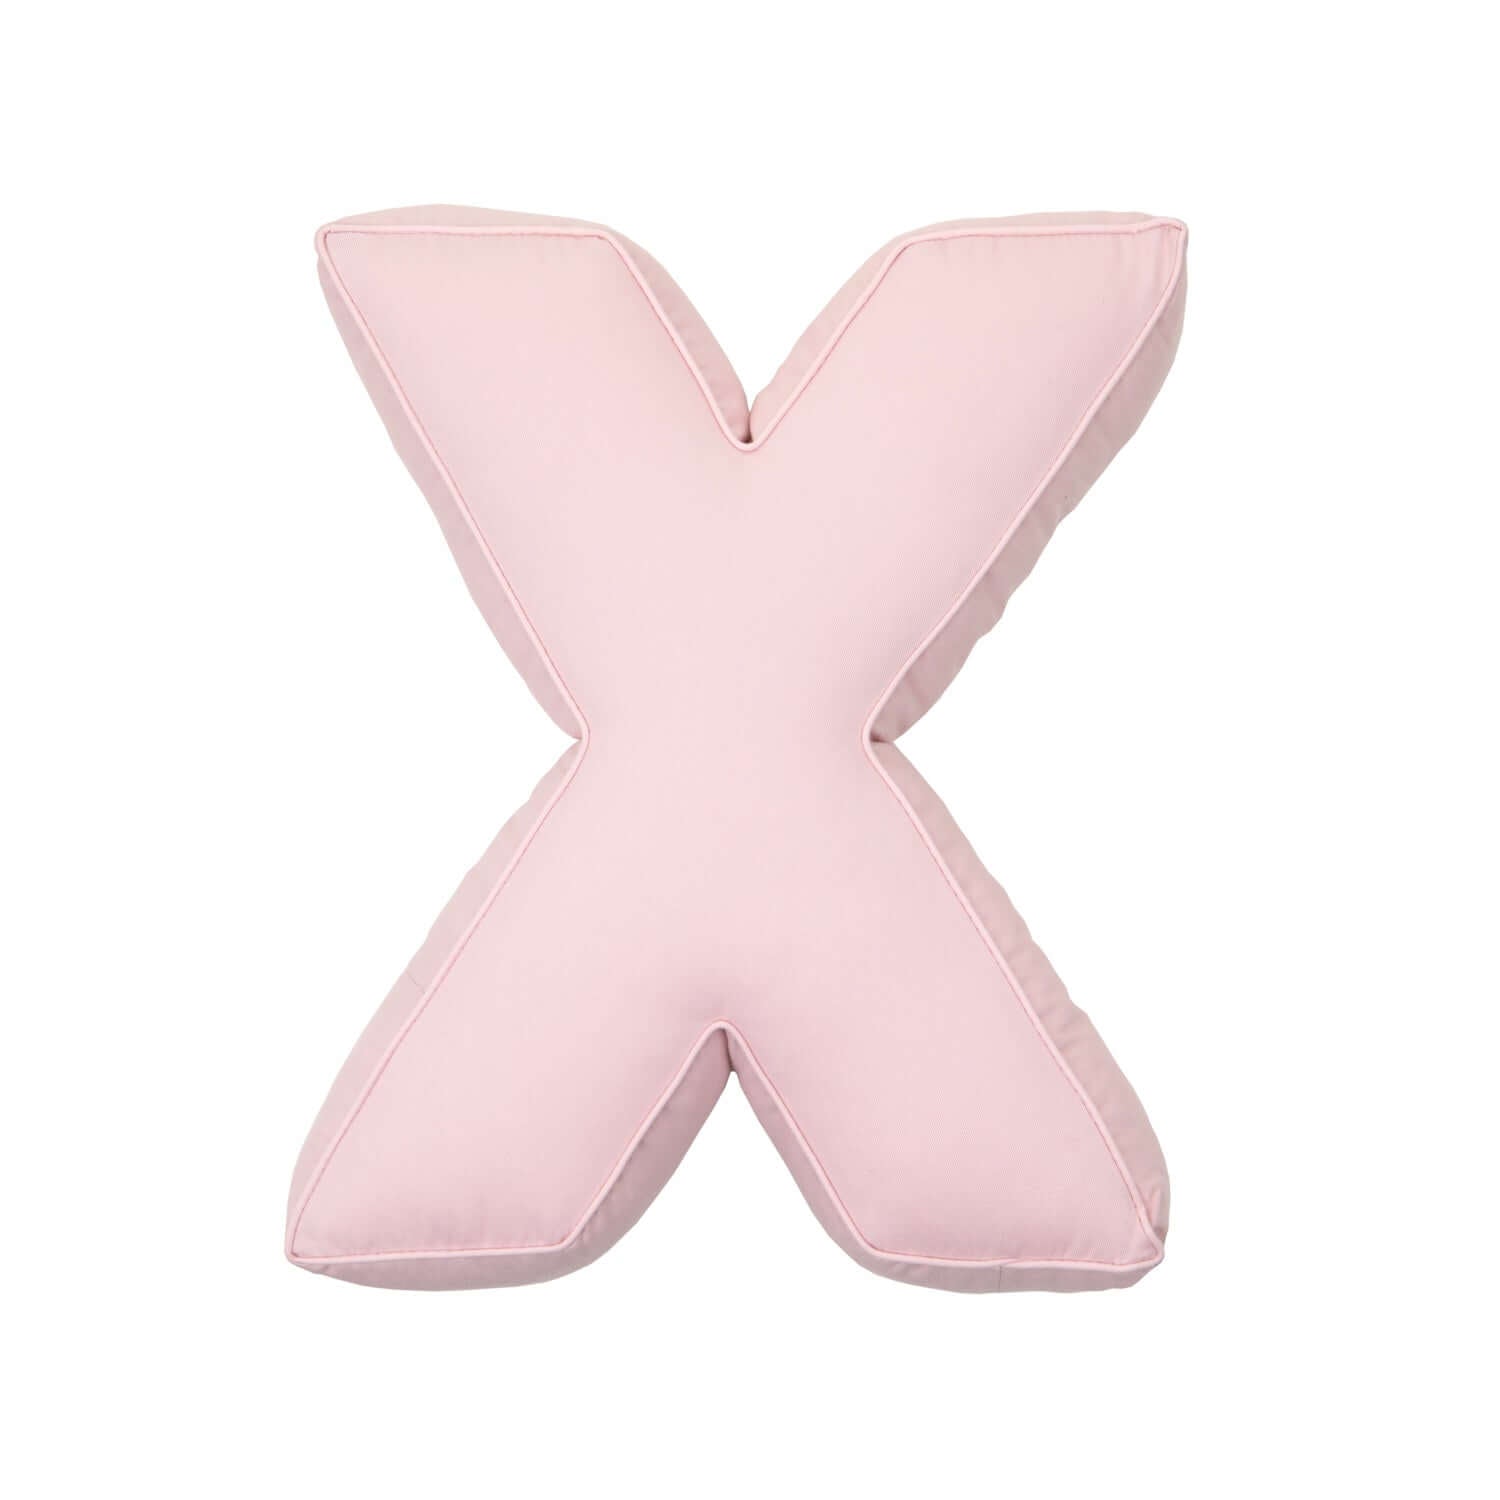 Bawełniana Poduszka Litera Poduszka X Pink. Poduszka w kształcie litery. Produkt ręcznie robiony.